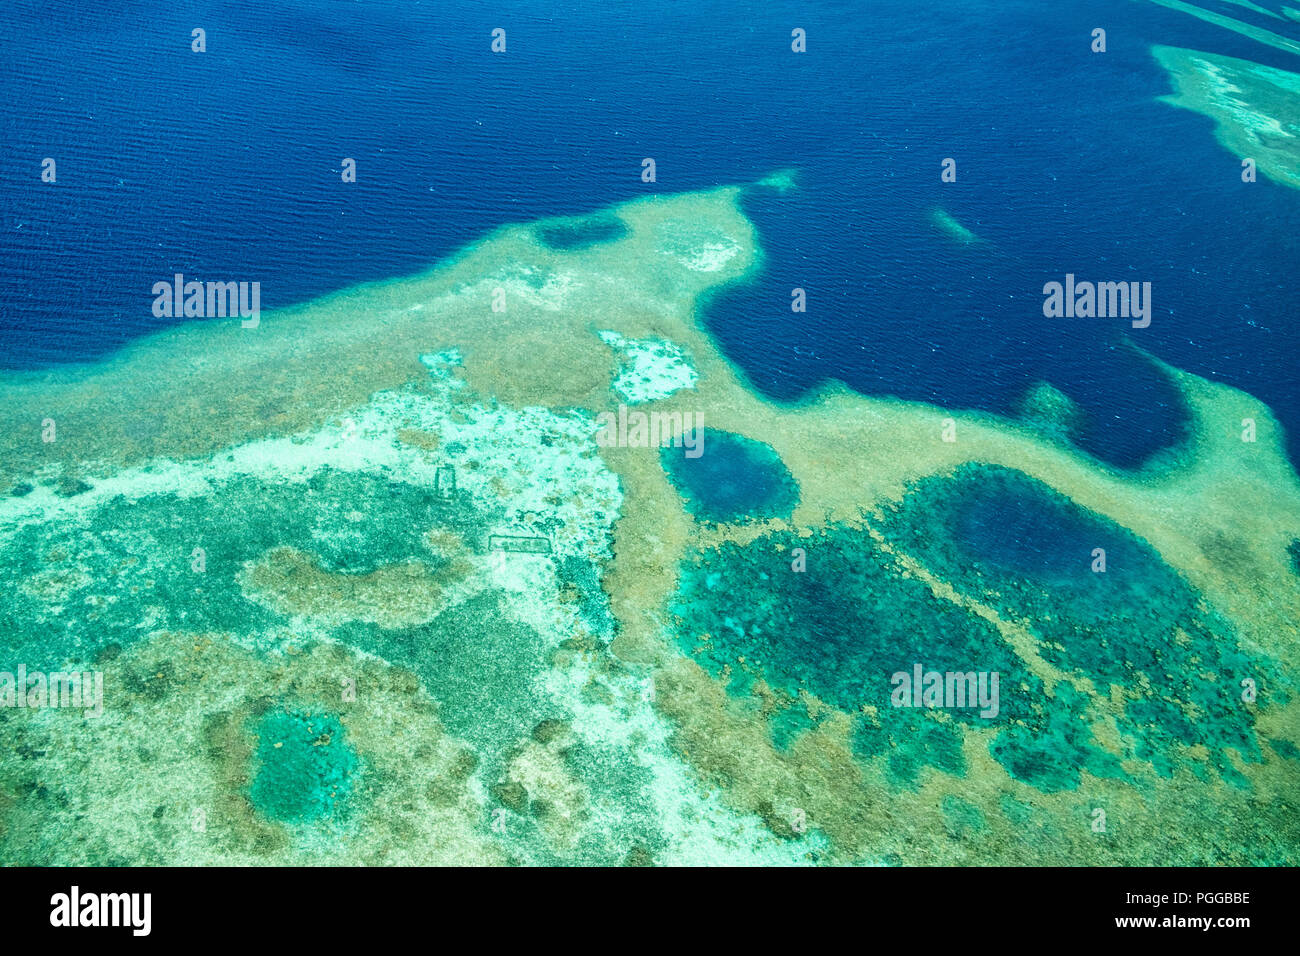 Schöne Aussicht von Palau Inseln und Riffs von oben Stockfoto